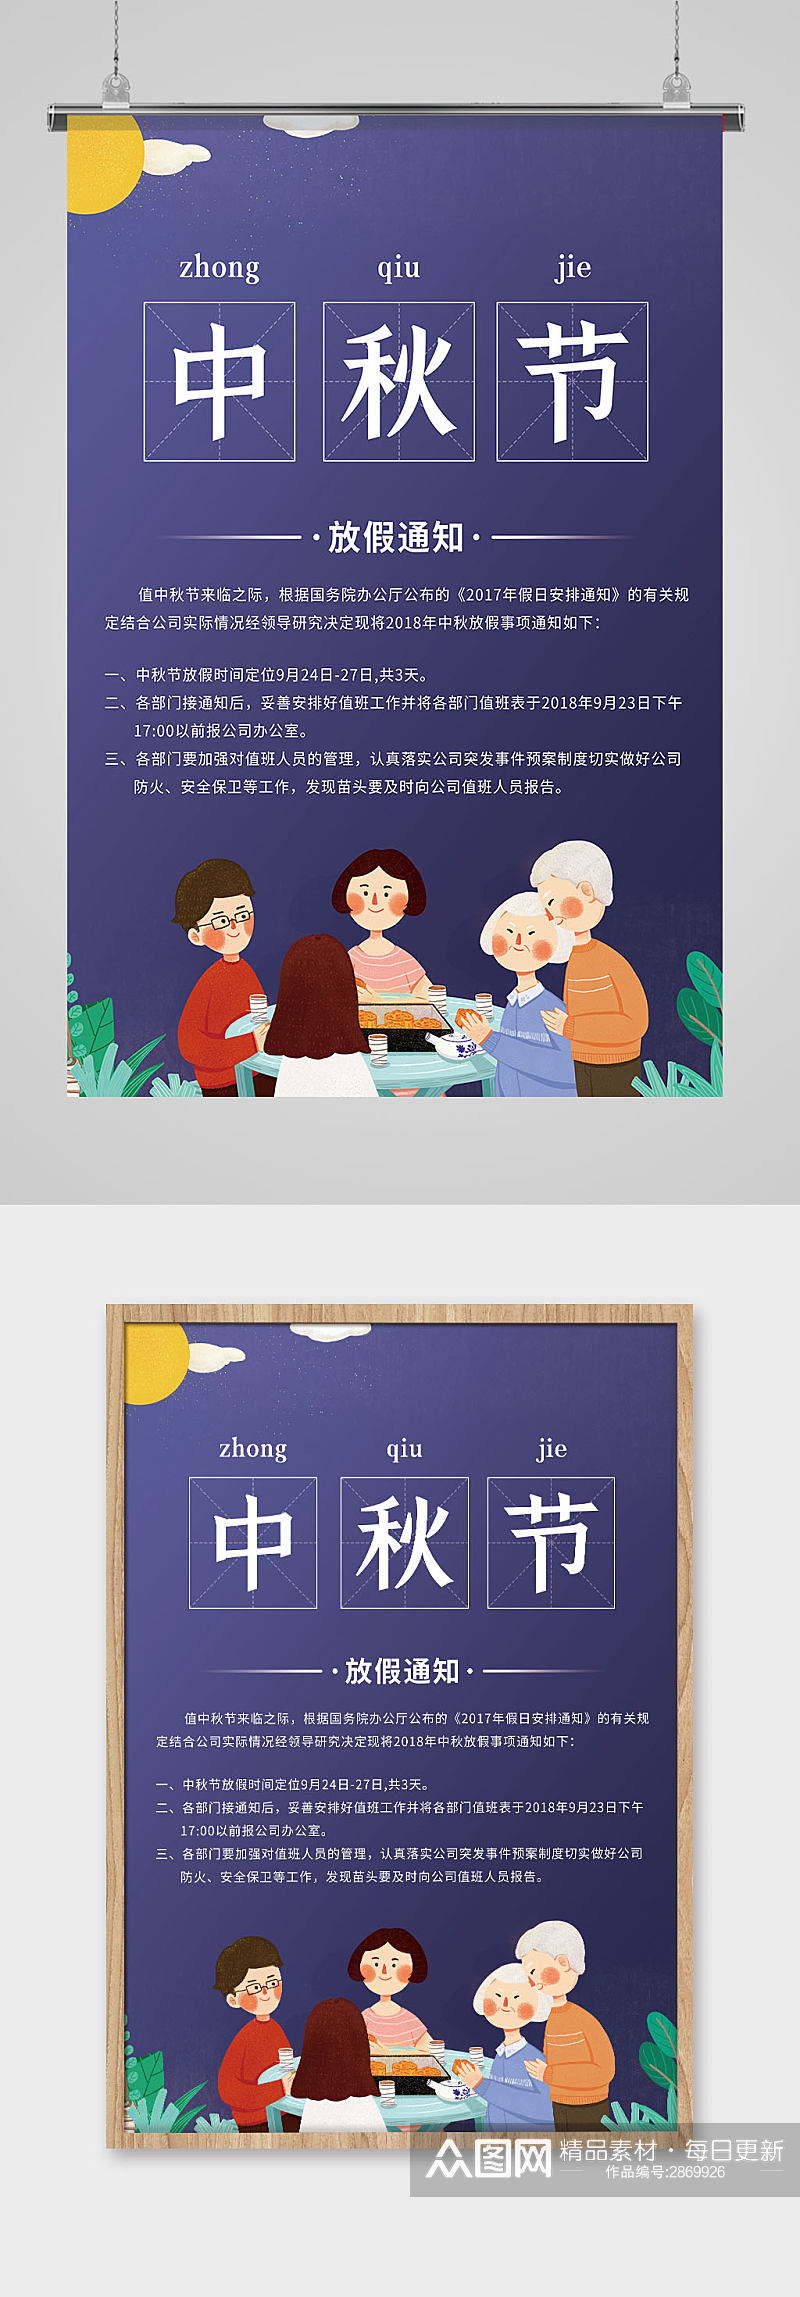 创意卡通一家团圆中秋节放假通知宣传海报素材